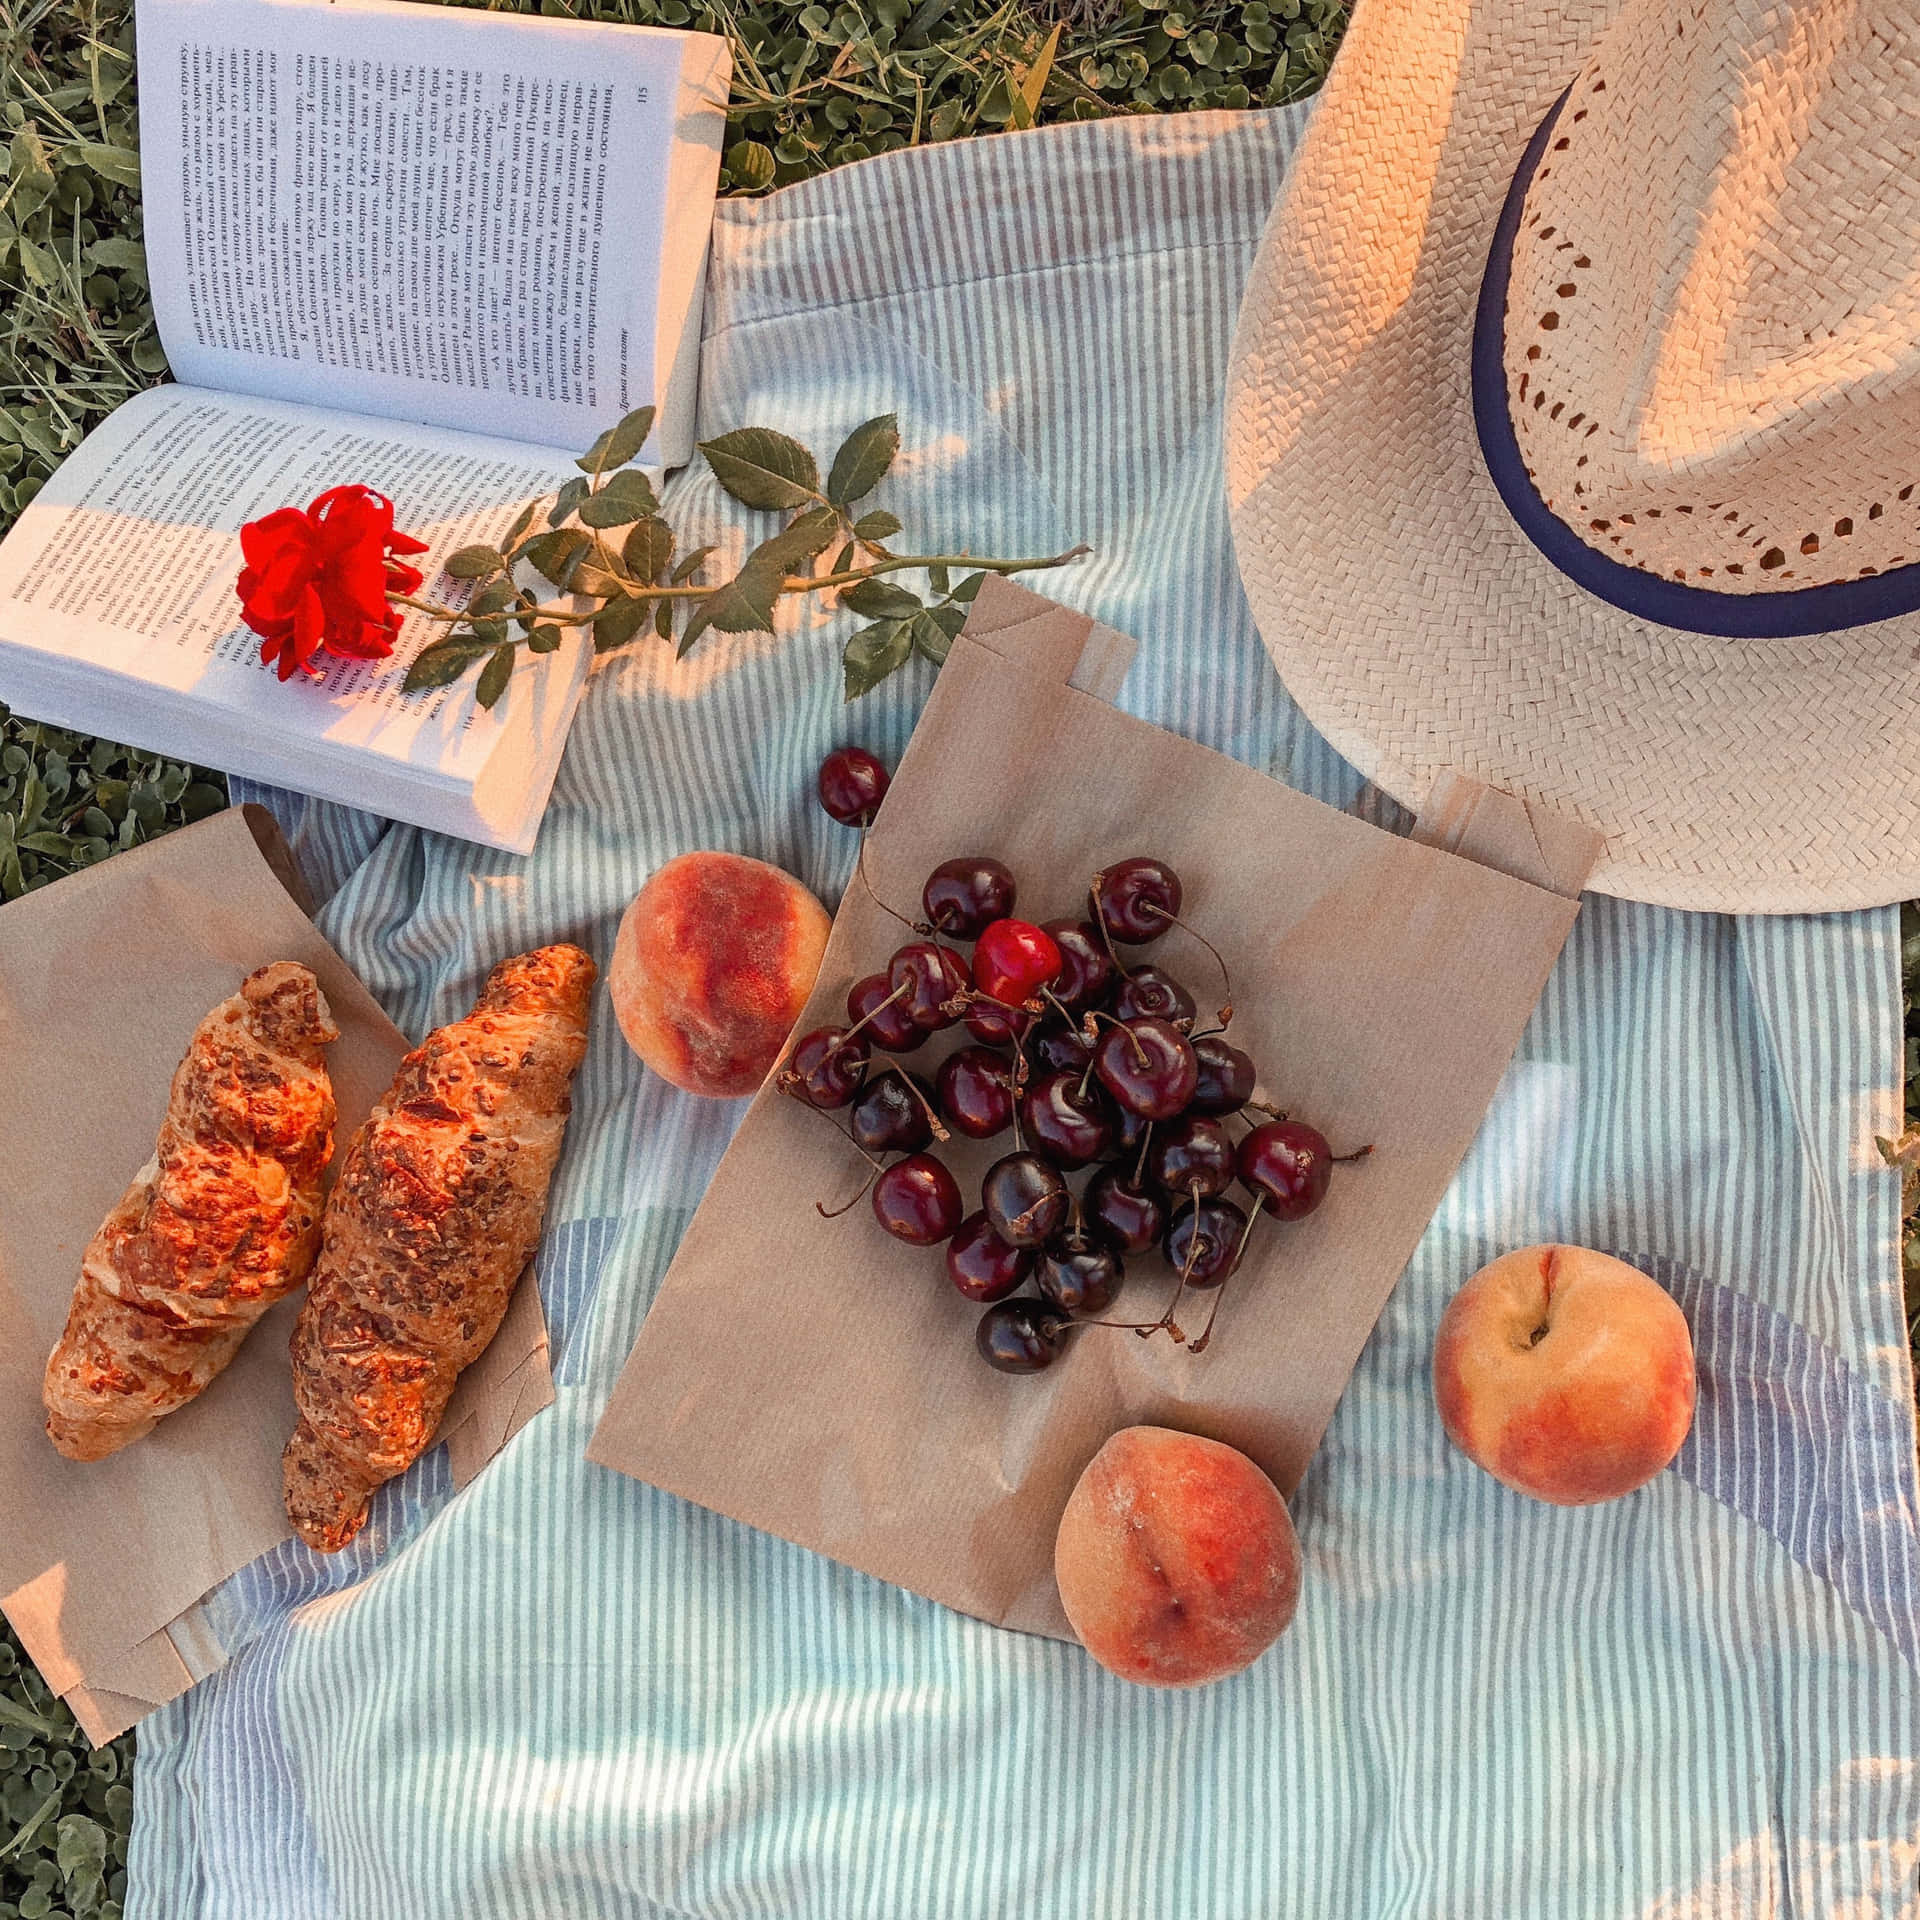 Einepicknickdecke Mit Einem Buch, Croissants Und Obst